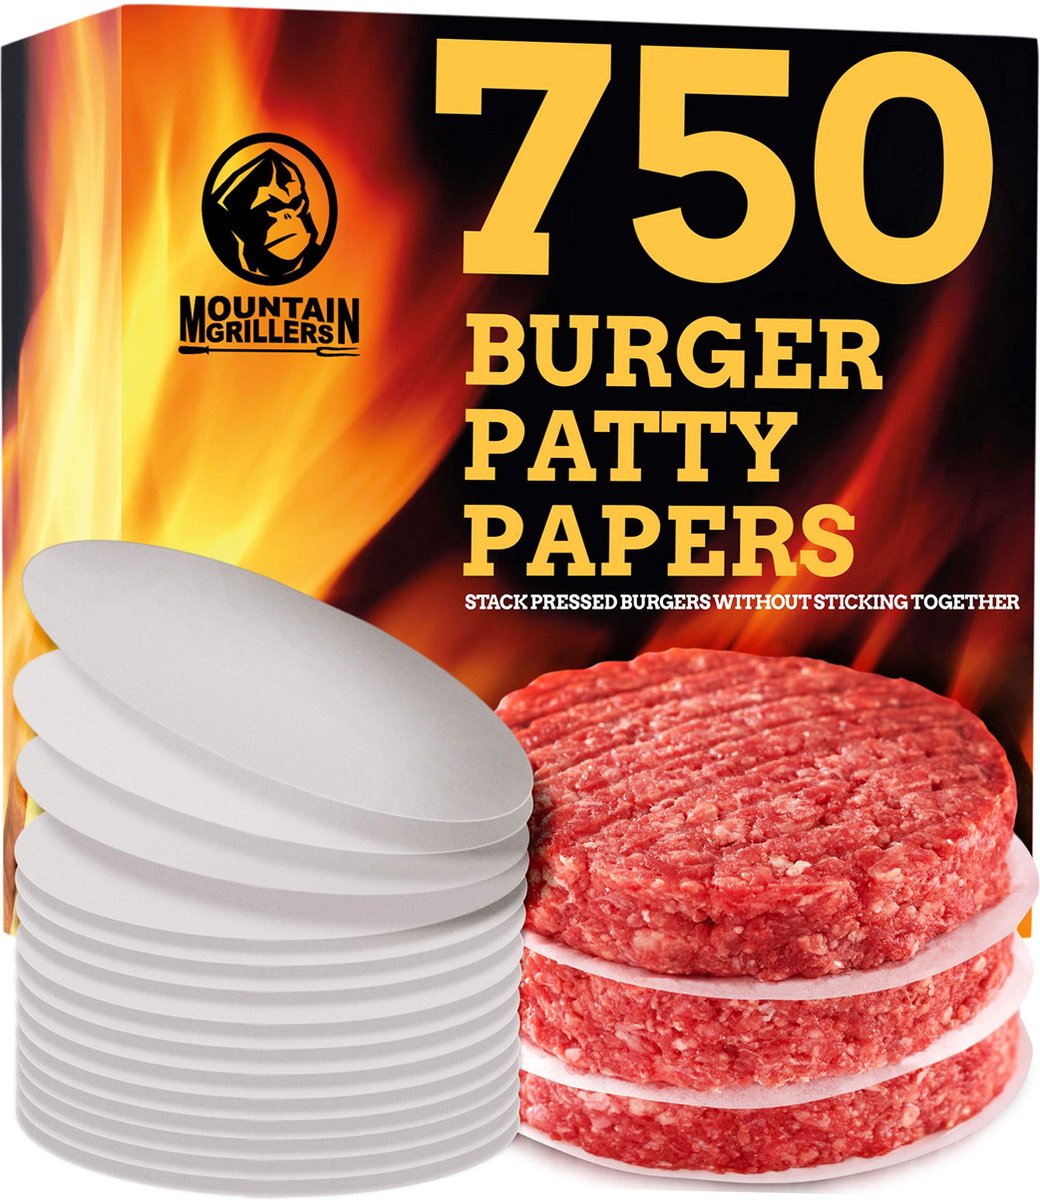 Mountain Grillers Burger Press Patty Burger Maker - Hamburgervormenset met antiaanbaklaag voor het eenvoudig maken van heerlijke gevulde hamburgers, gewone rundvleesburgers en perfect gevormde pasteitjes - 40 pattypapiertjes